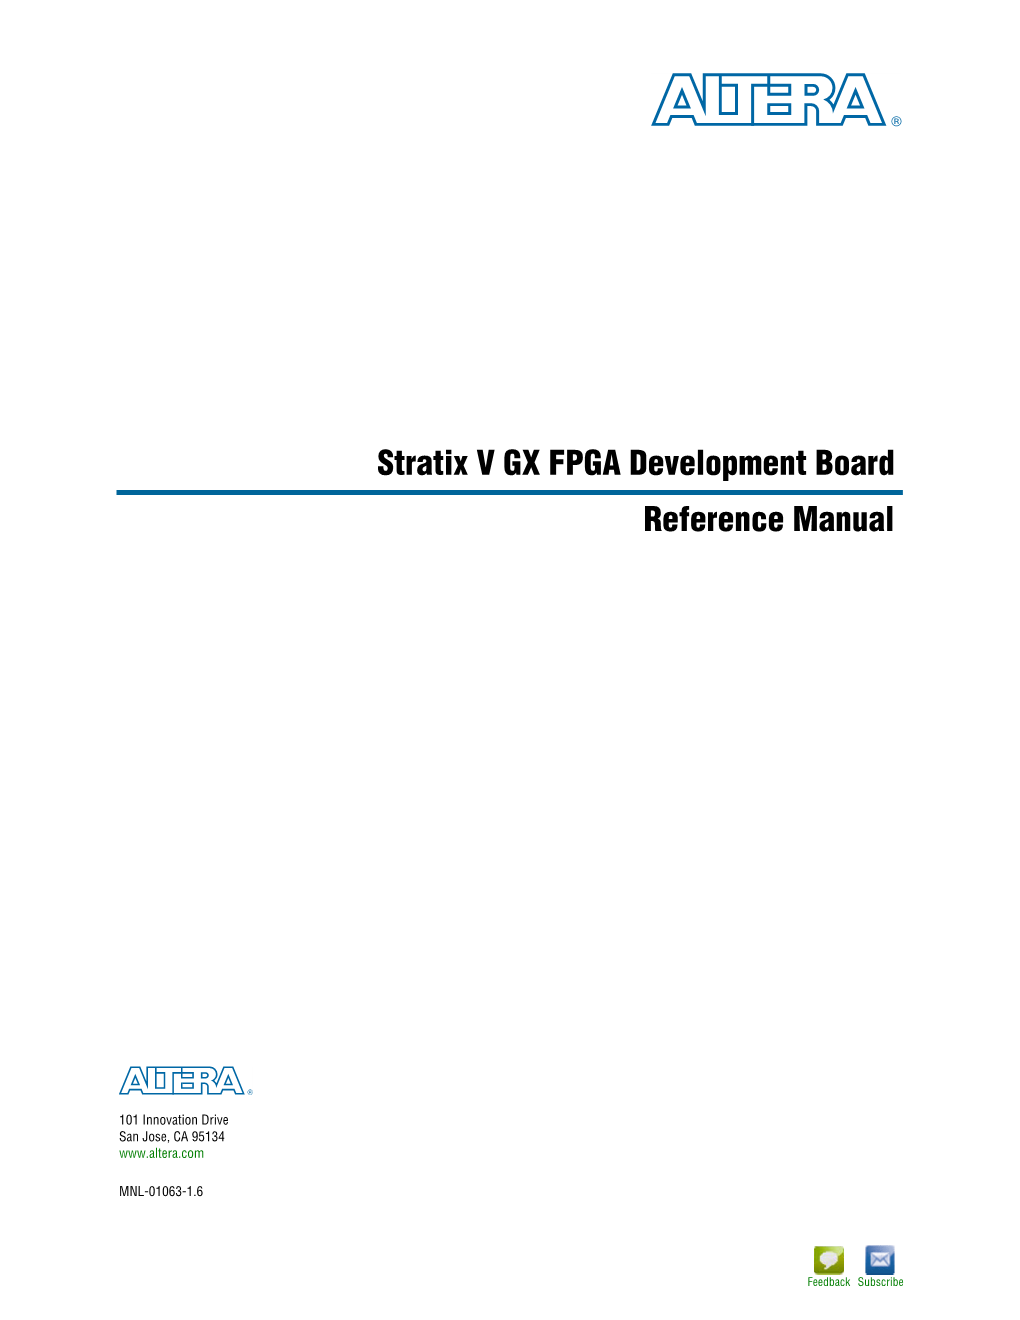 Stratix V GX FPGA Development Board Reference Manual